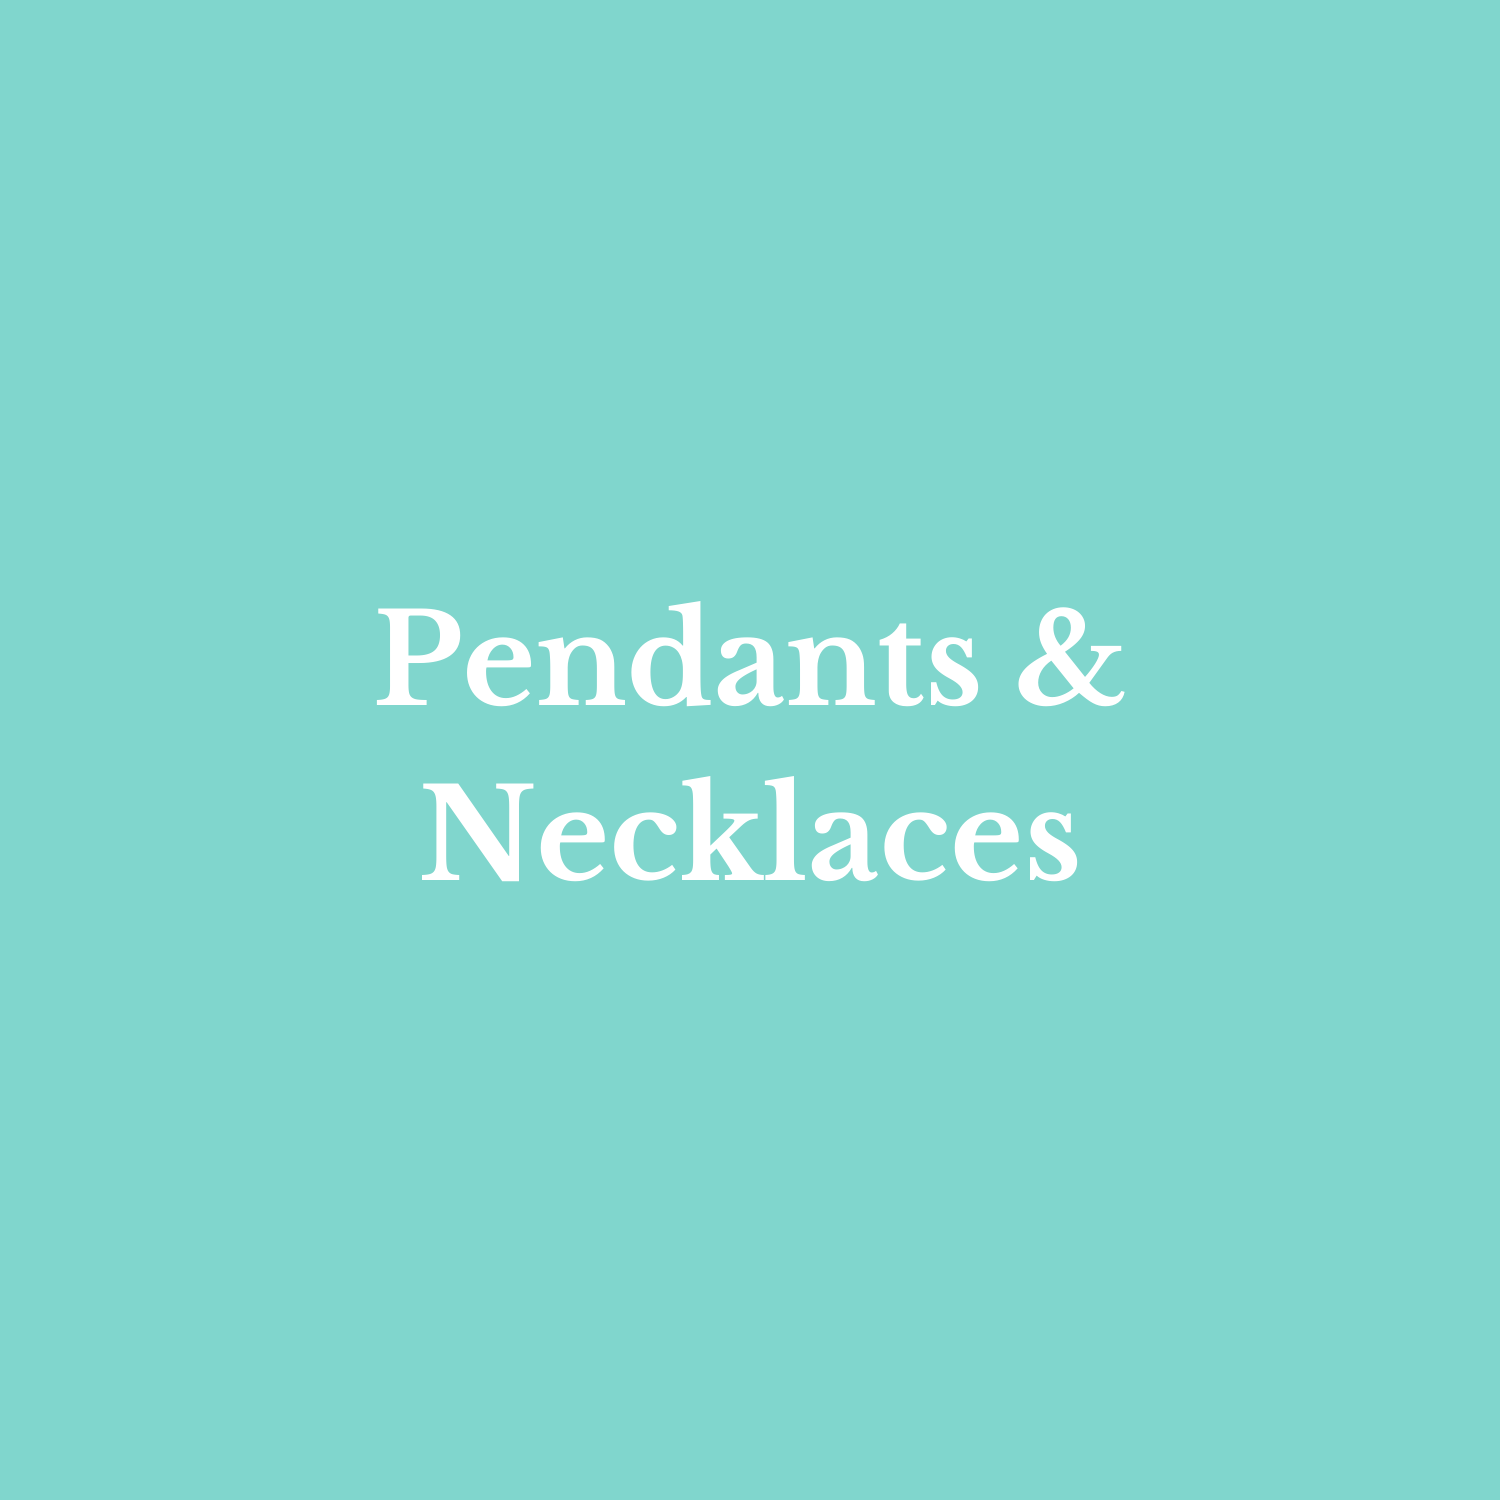 Pendants & Necklaces